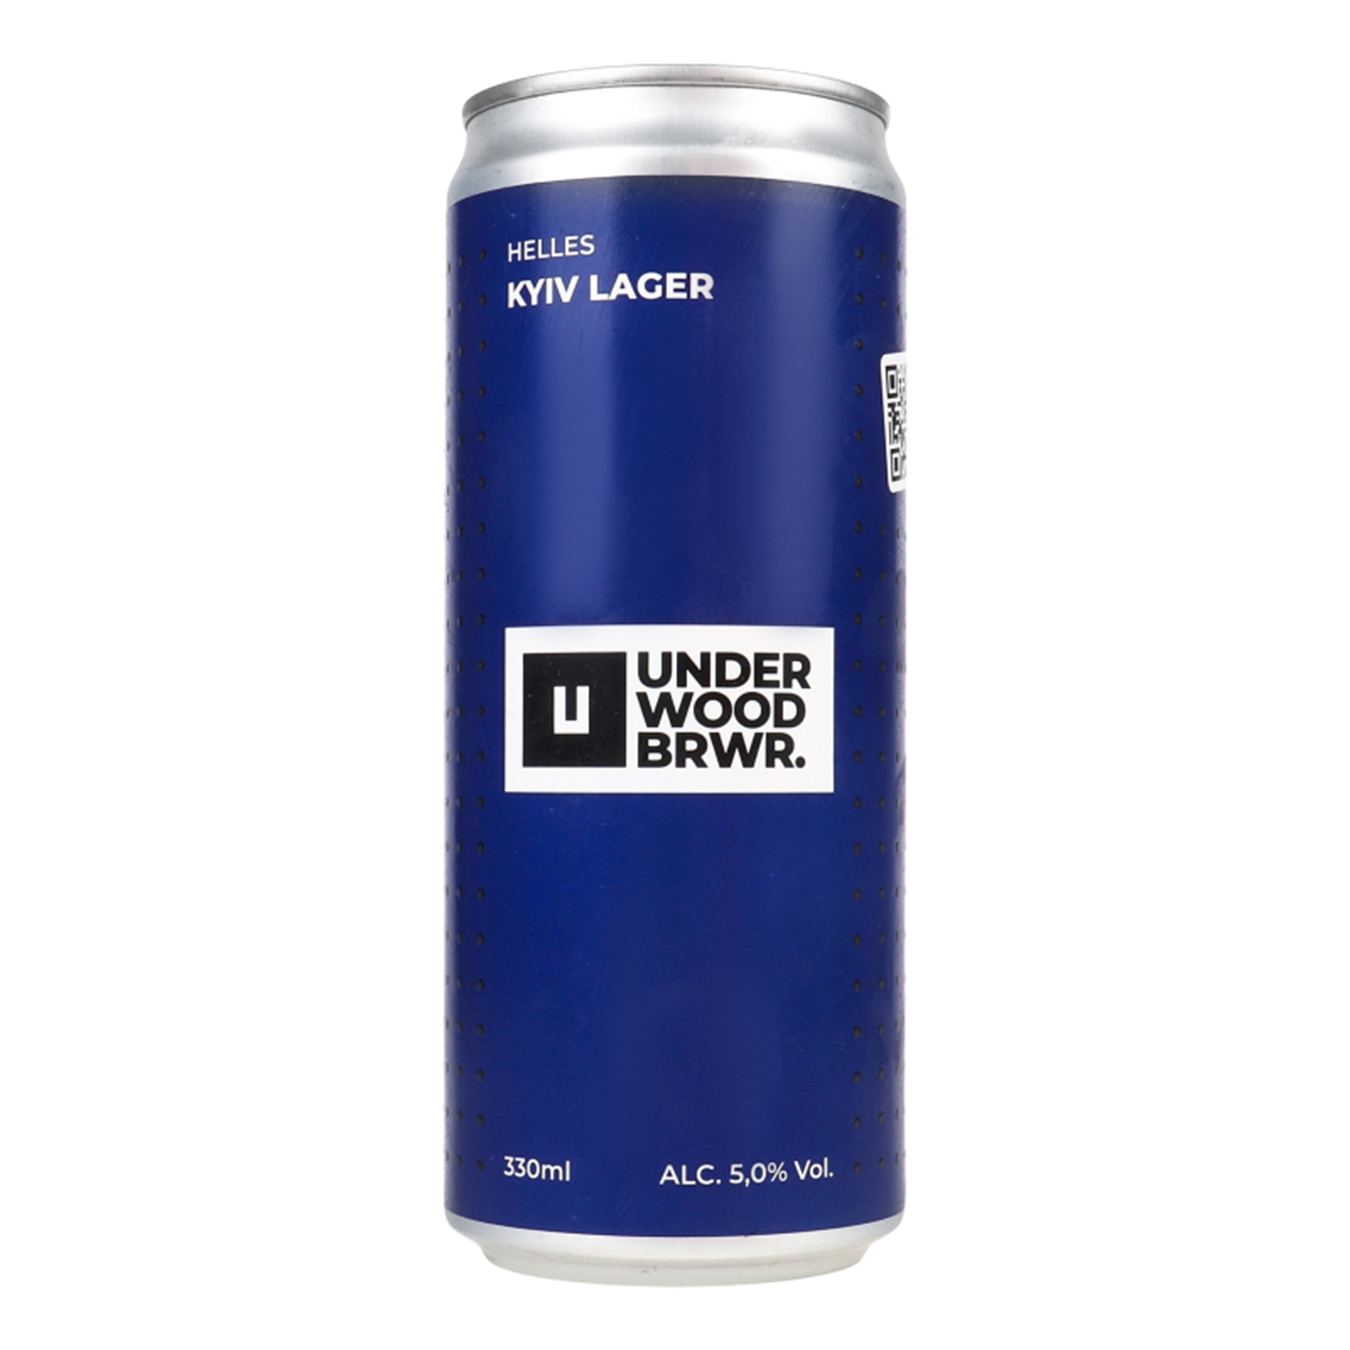 Пиво світле Underwood BREWERY Kyiv Lager 5% 0,33л залізна банка